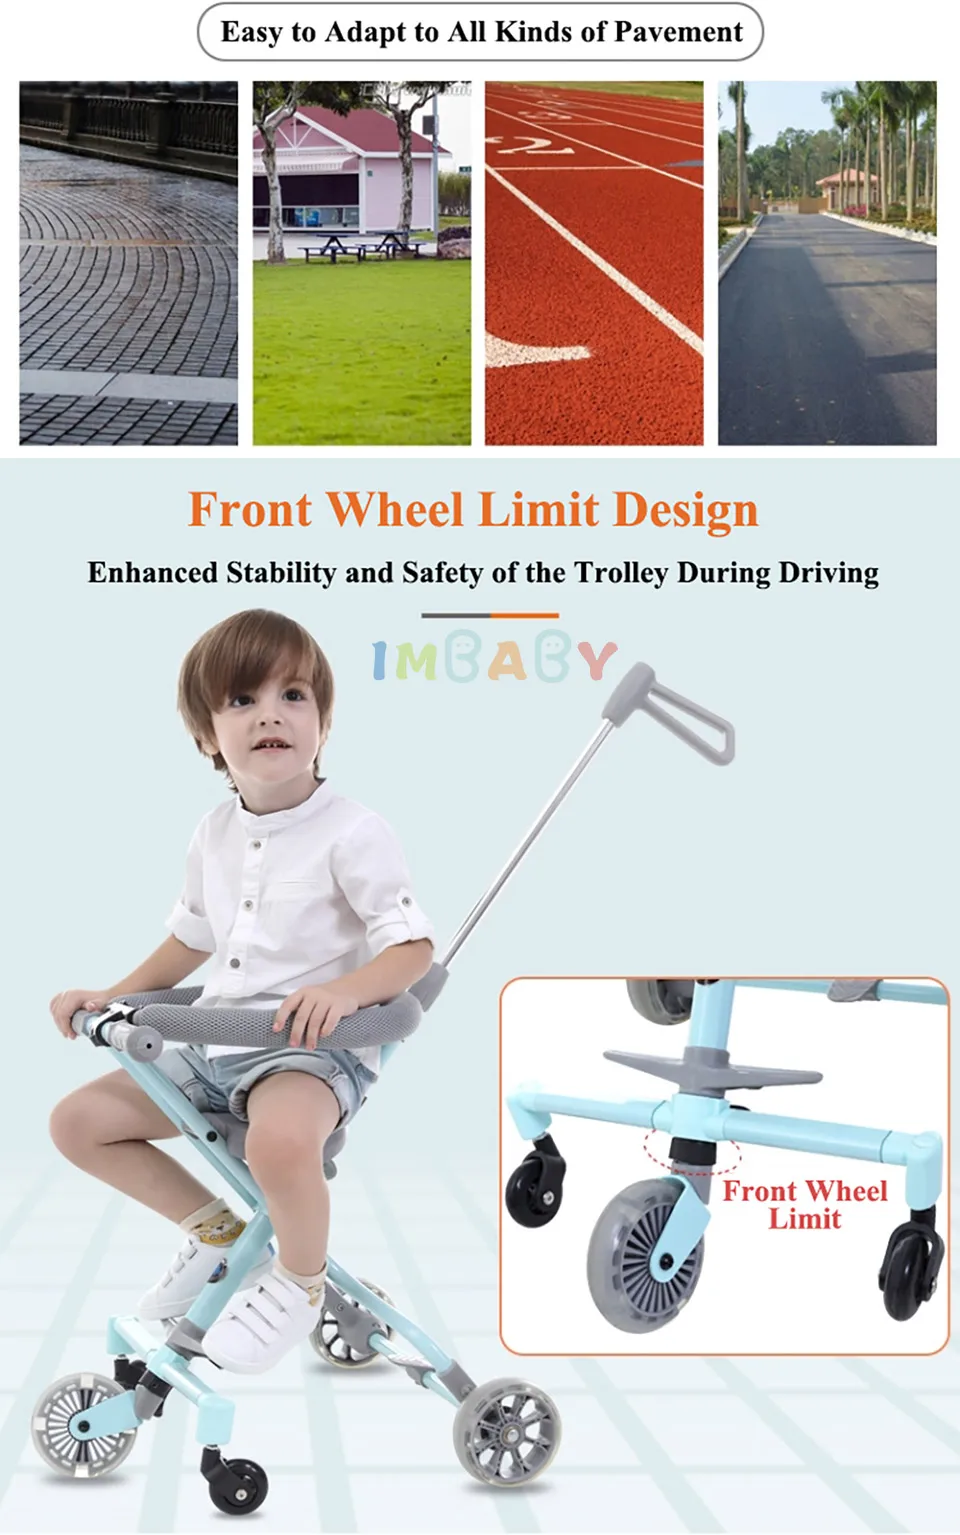 Детская коляска IMBABY кататься на велосипеде ультра-легкий складной От 3 до 6 лет детская тележка высокий пейзаж зонтик детская тележка